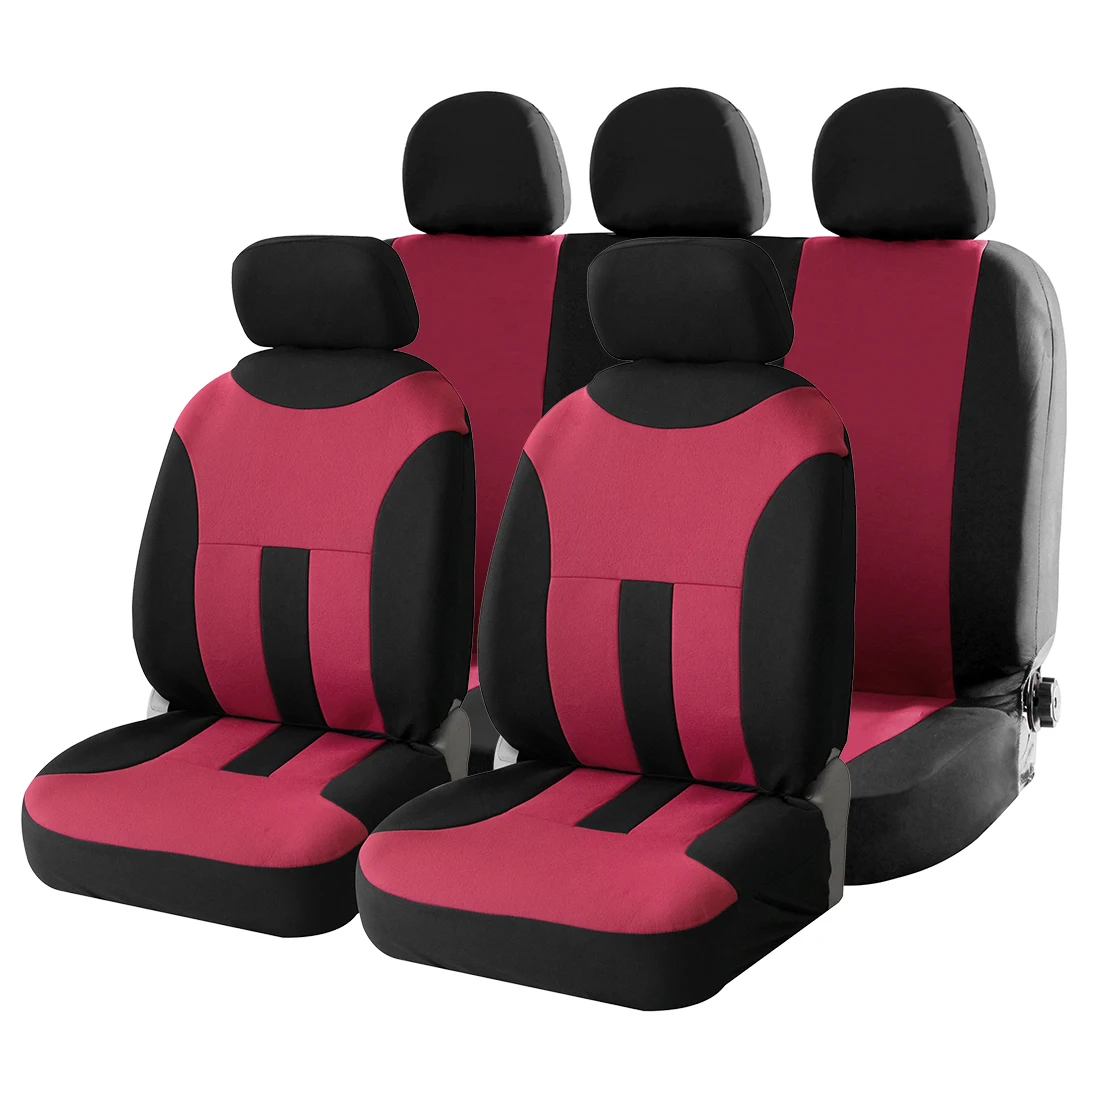 Uxcell автомобильные чехлы для сидений, подушка безопасности, совместимый универсальный подходит для большинства автомобилей, Чехлы, аксессуары, защита для сидений автомобиля для Toyota ford vw, 3 цвета - Название цвета: Black Rose